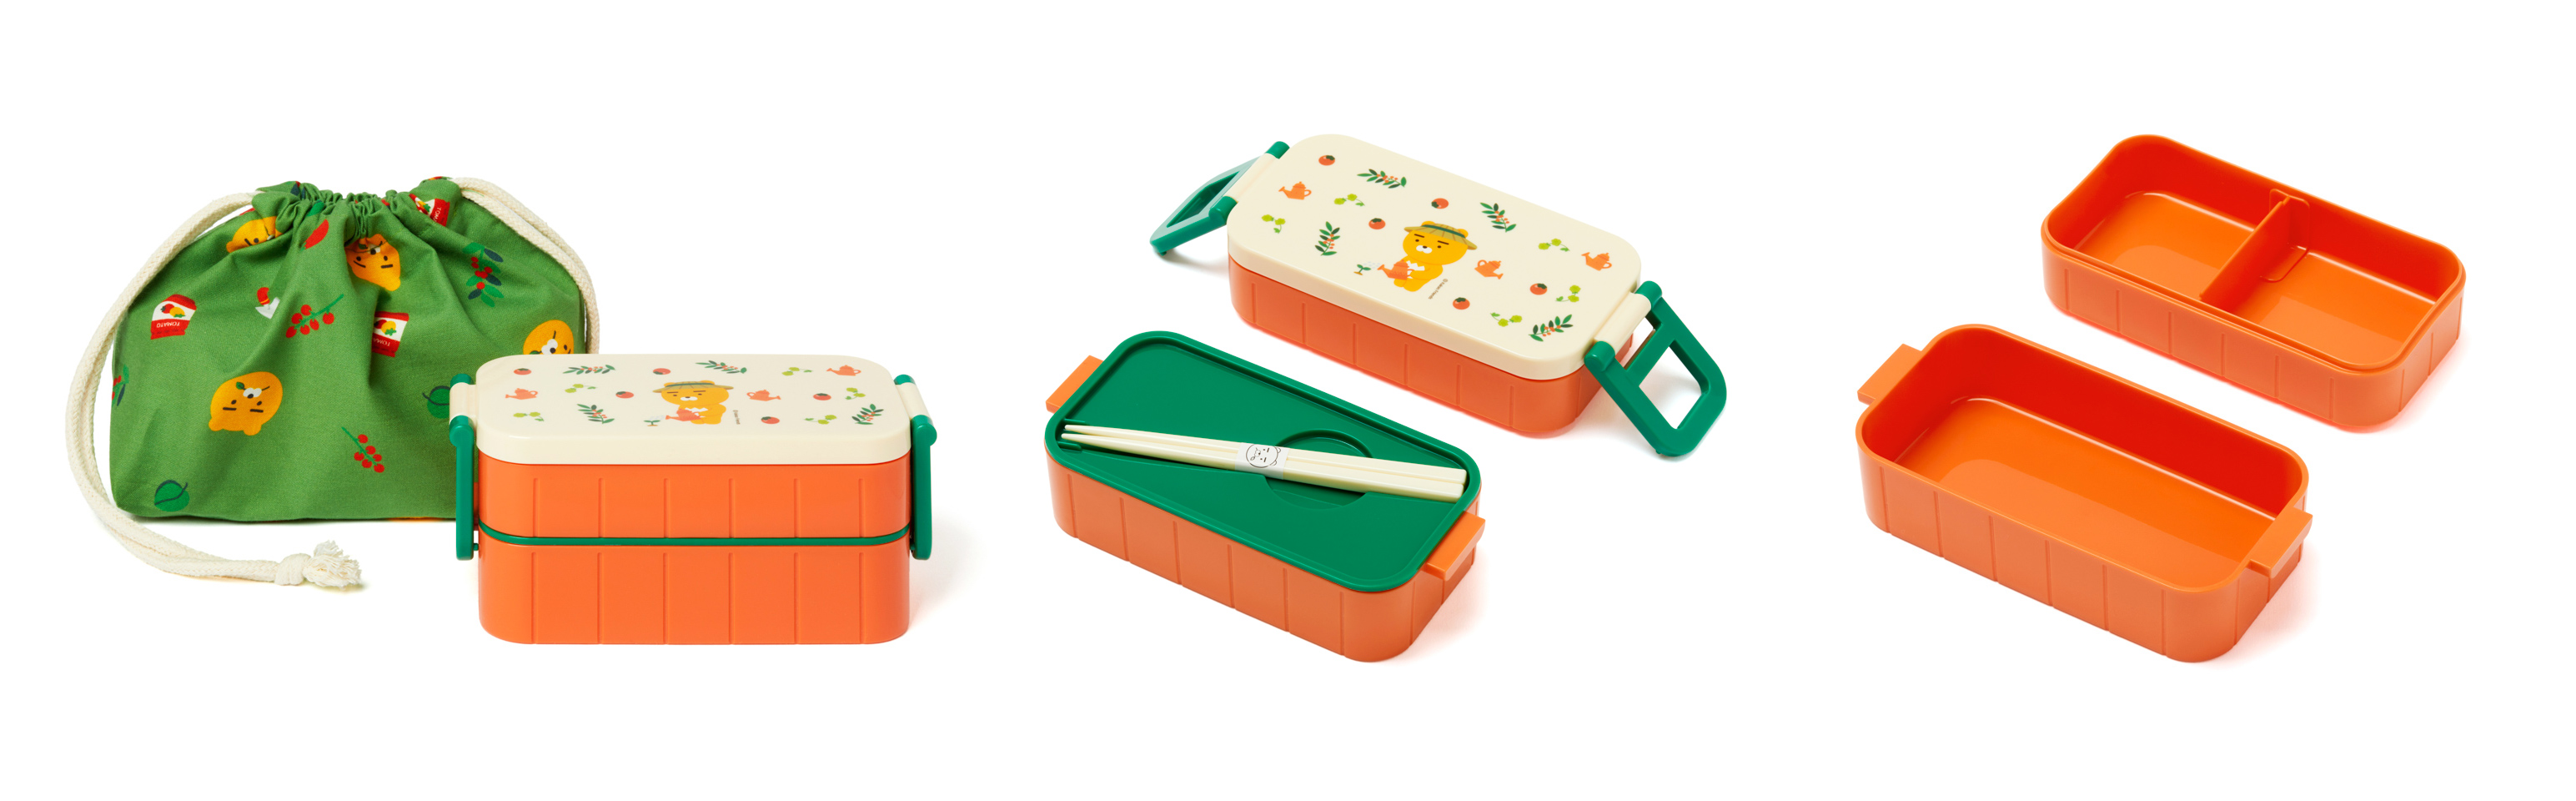 Gardener Picnic飯盒連布袋 (KRW29,000 約HK$212)